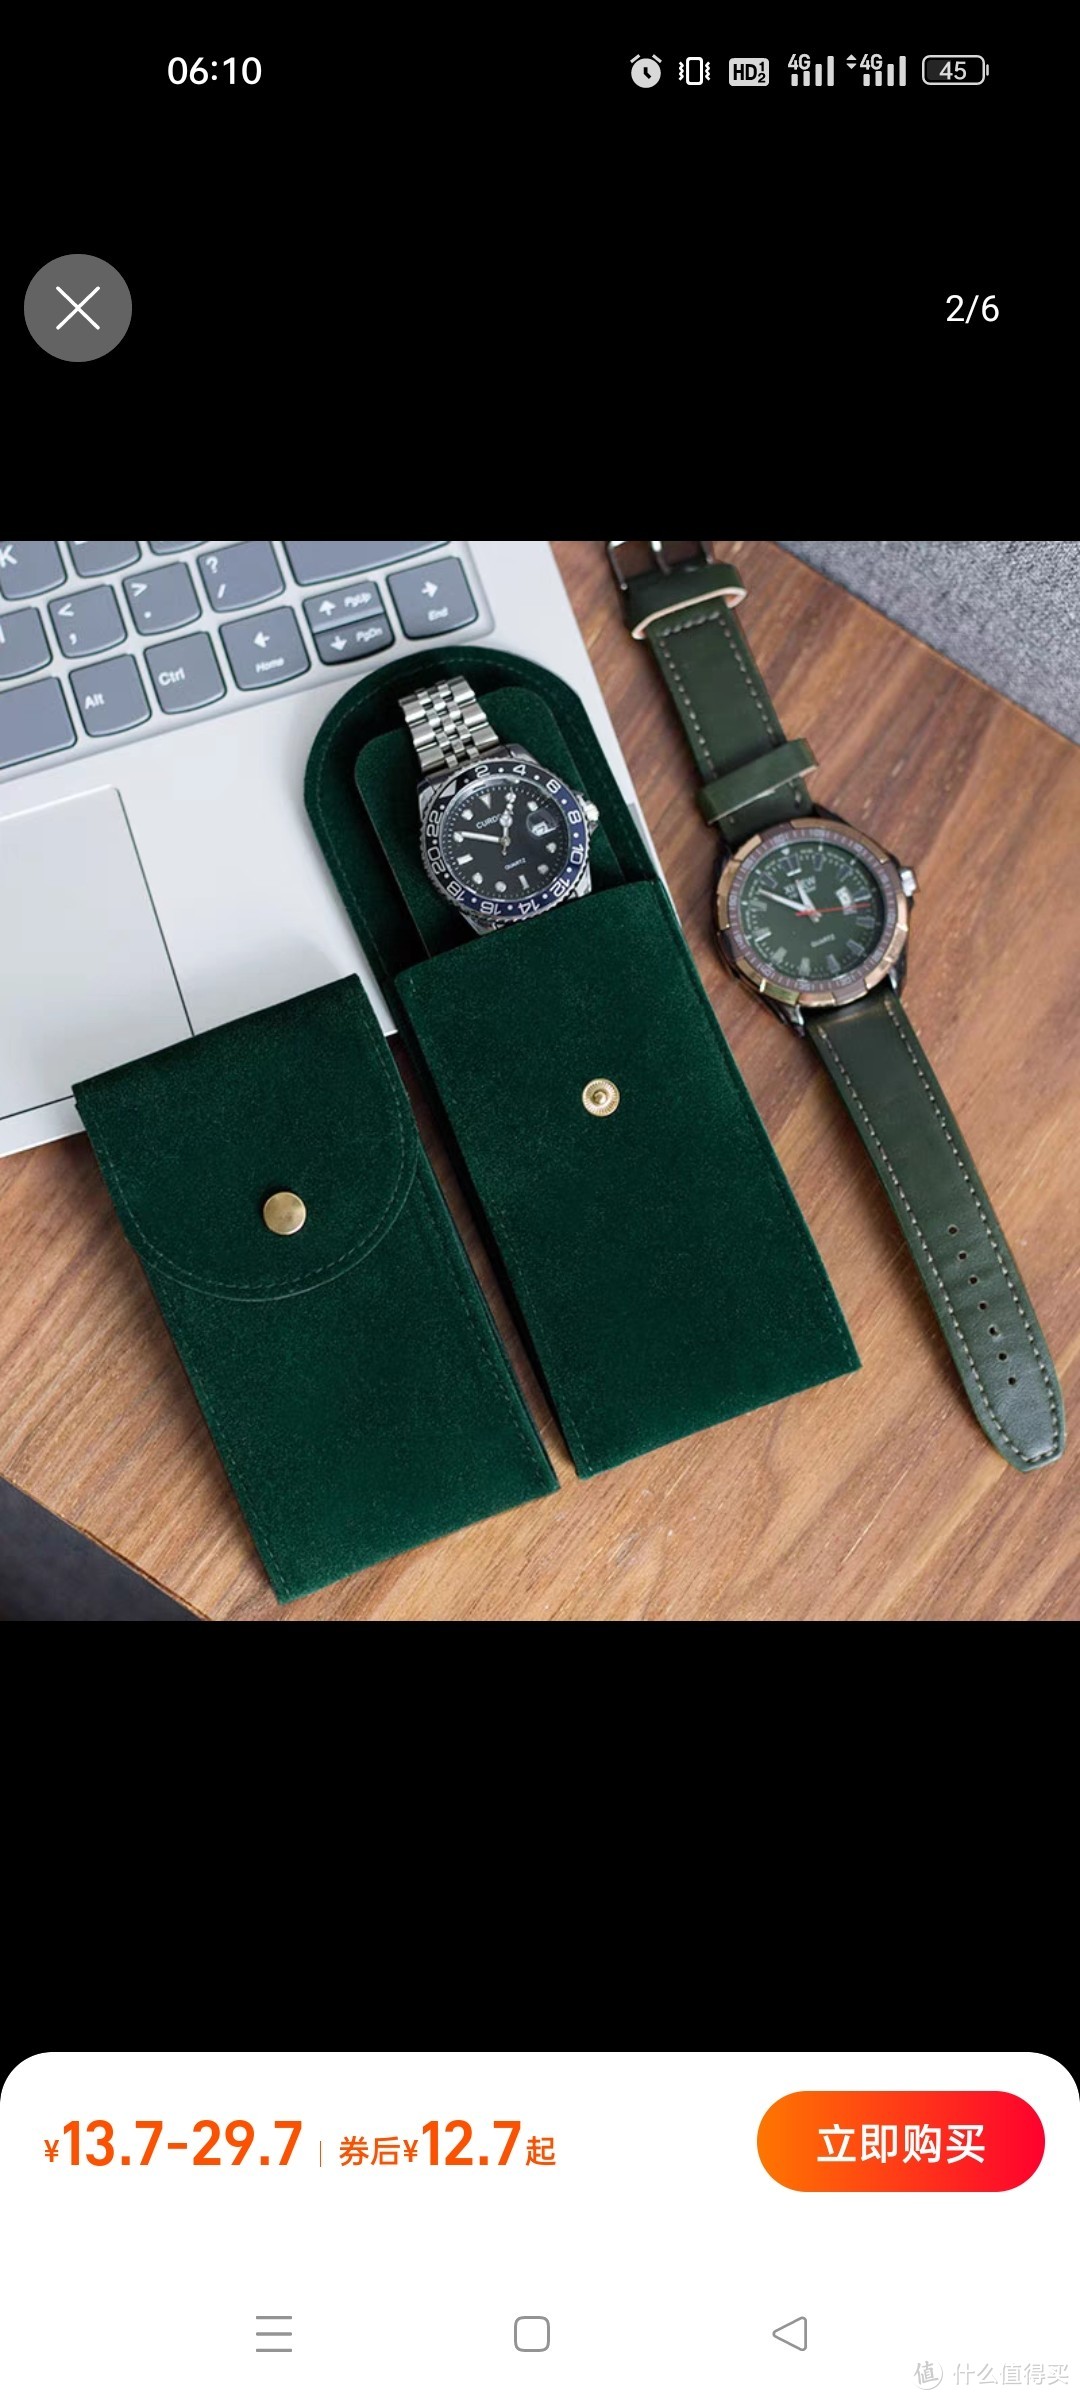 绿鬼手表收纳包便携手表袋旅行腕表袋保护袋绒布表盒单个收纳盒子